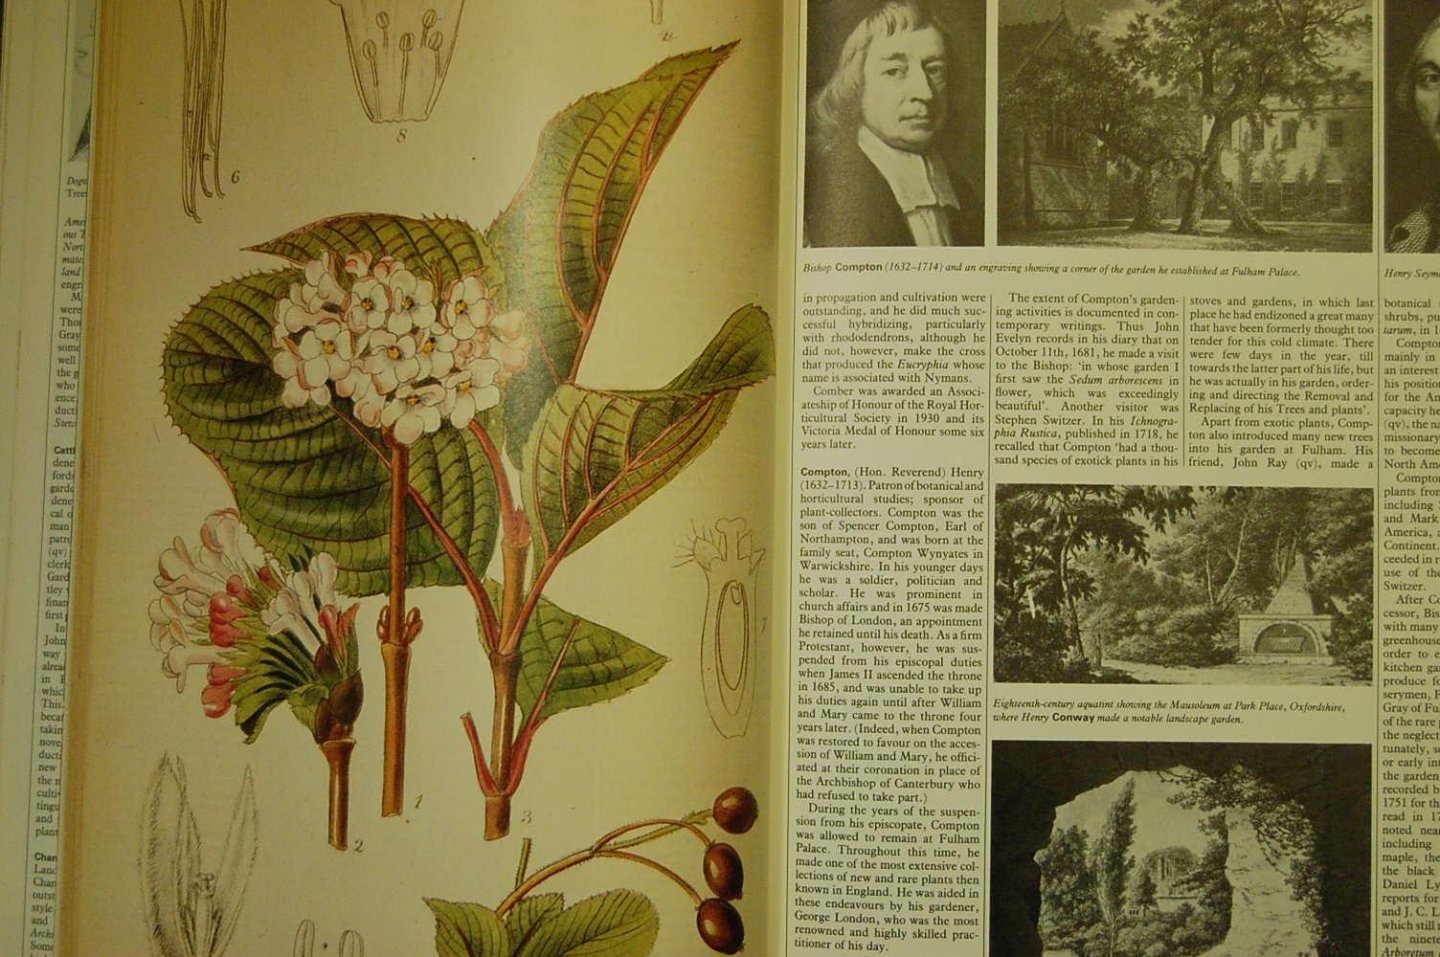 Hadfield, Miles;   Harling, Robert & Highton, Leonie - British Gardeners